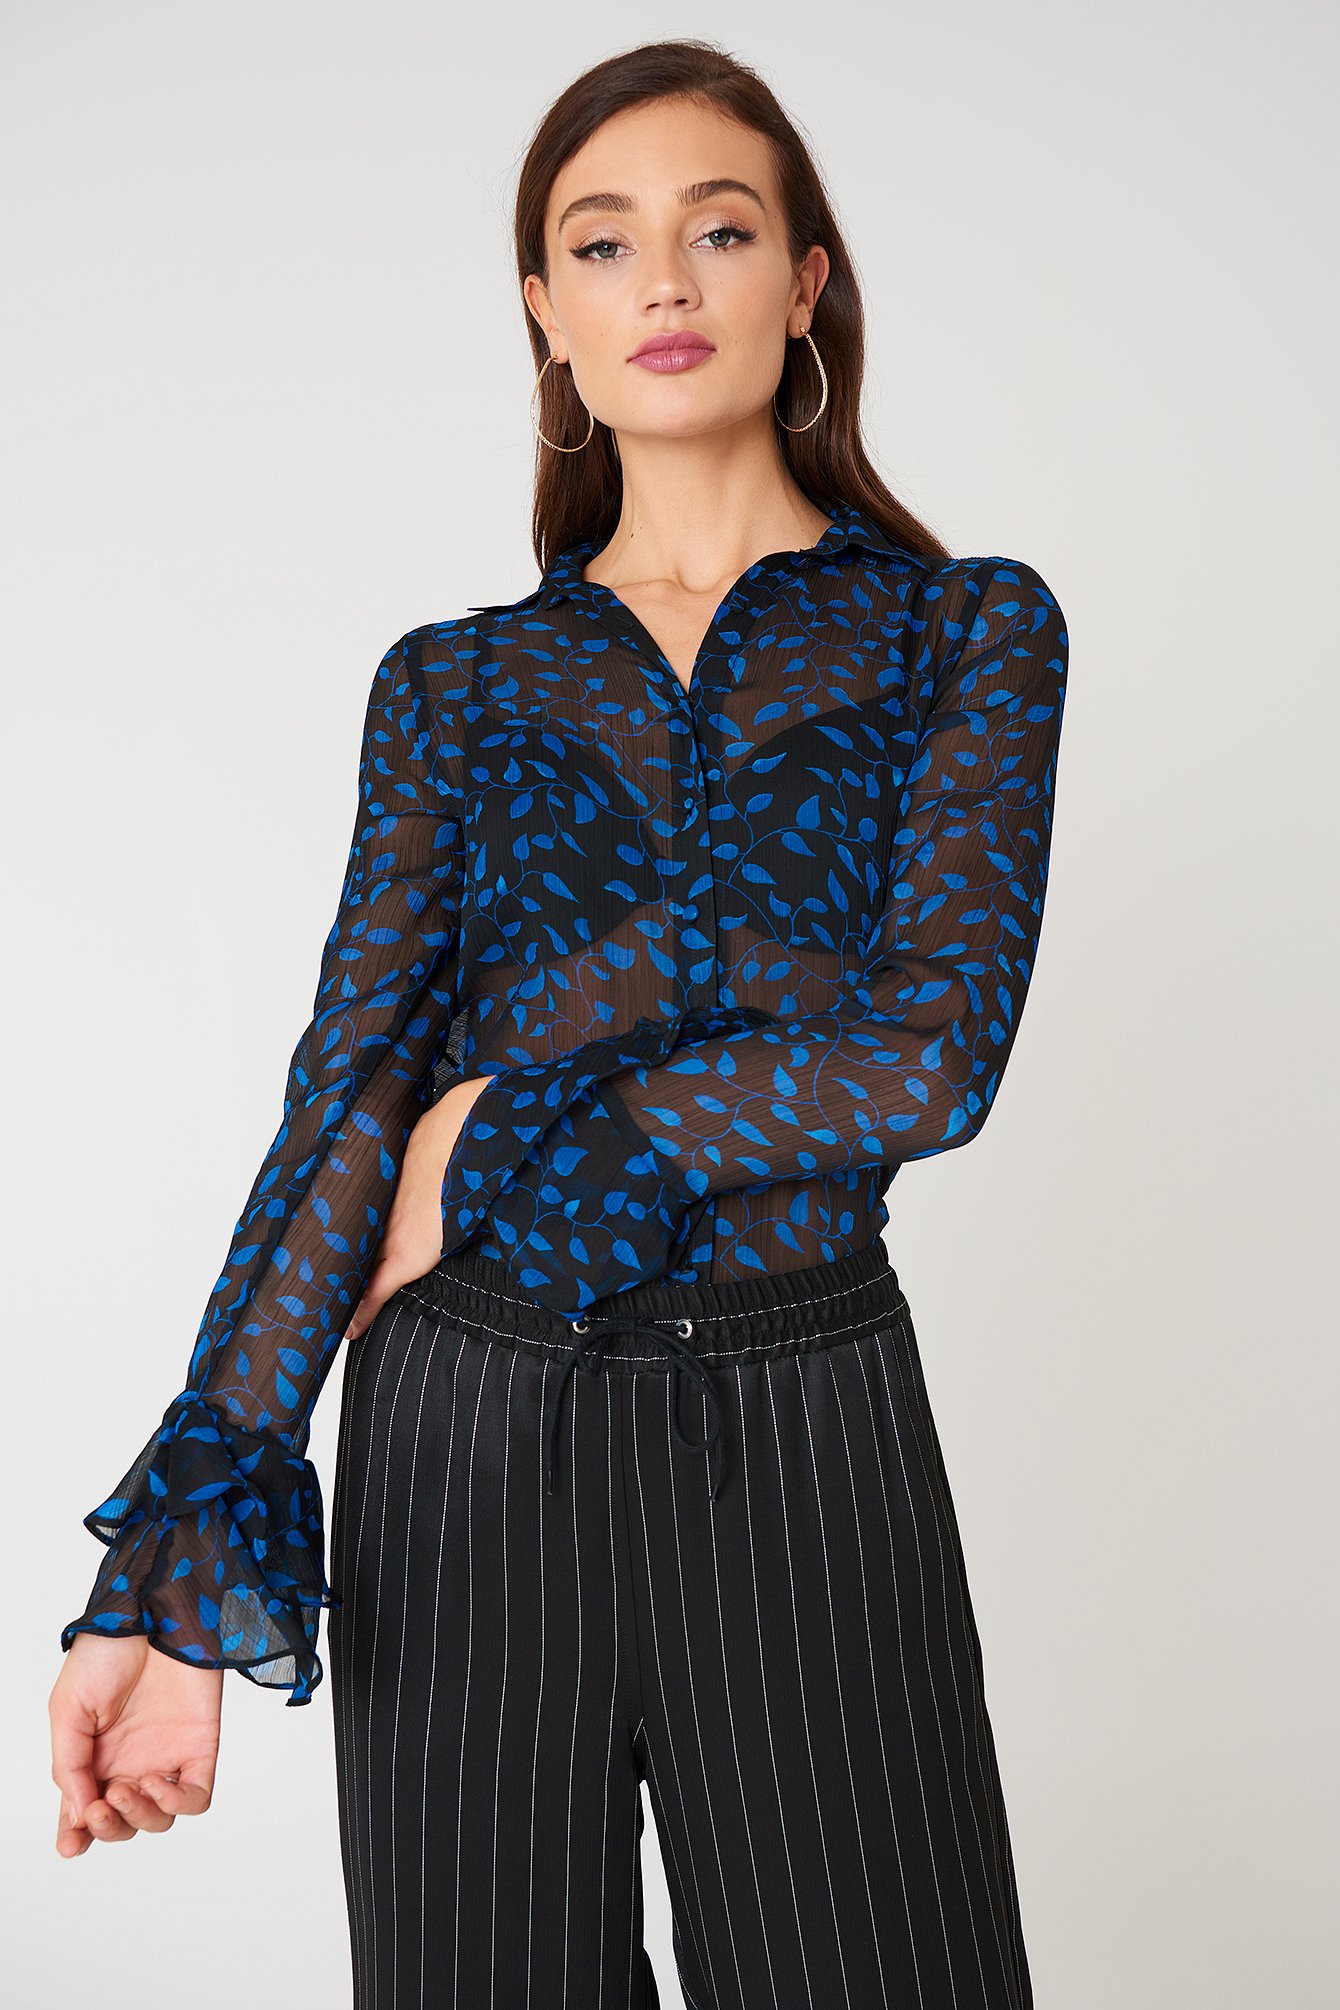 Black/Blue Pattern NA-KD Boho Chiffon Frill Sleeve Shirt